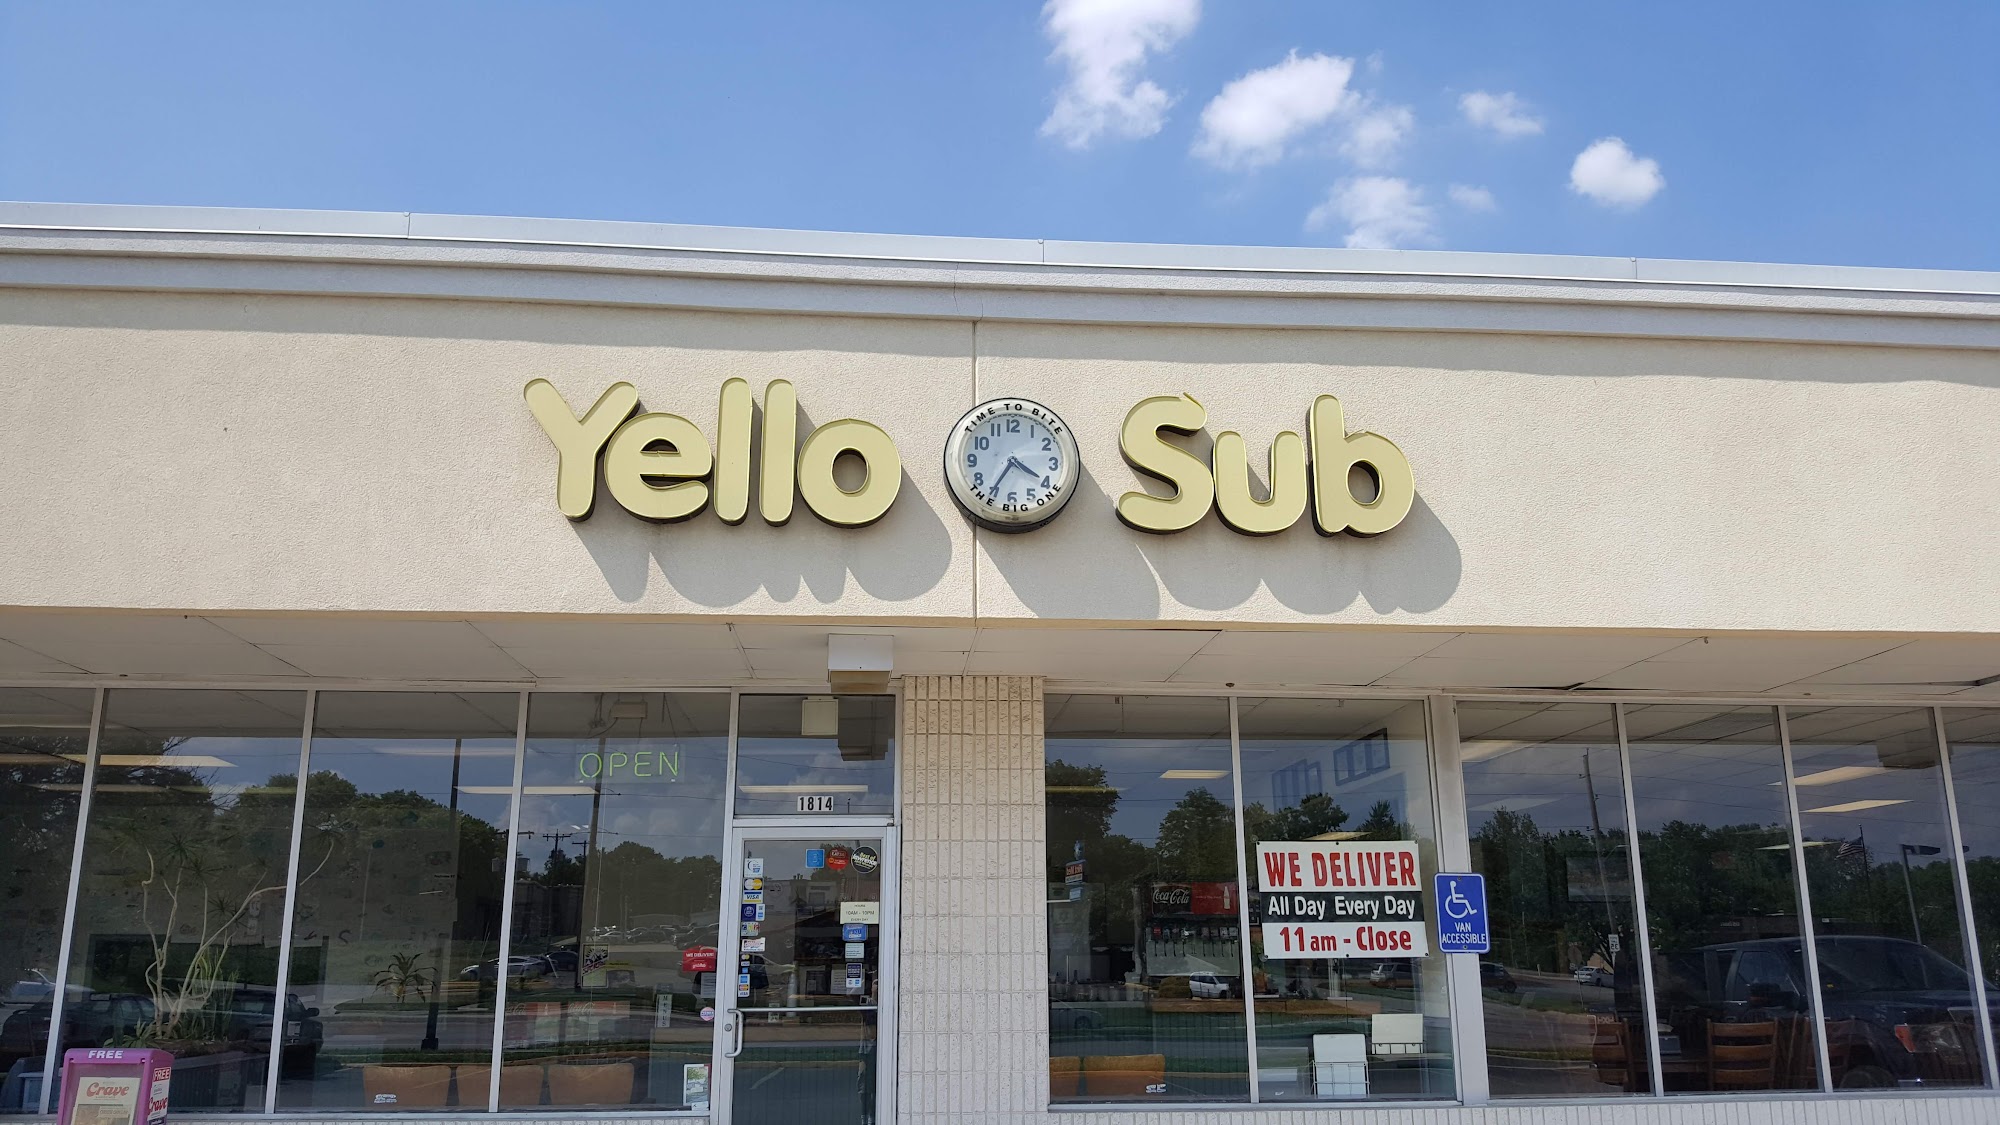 Yello Sub